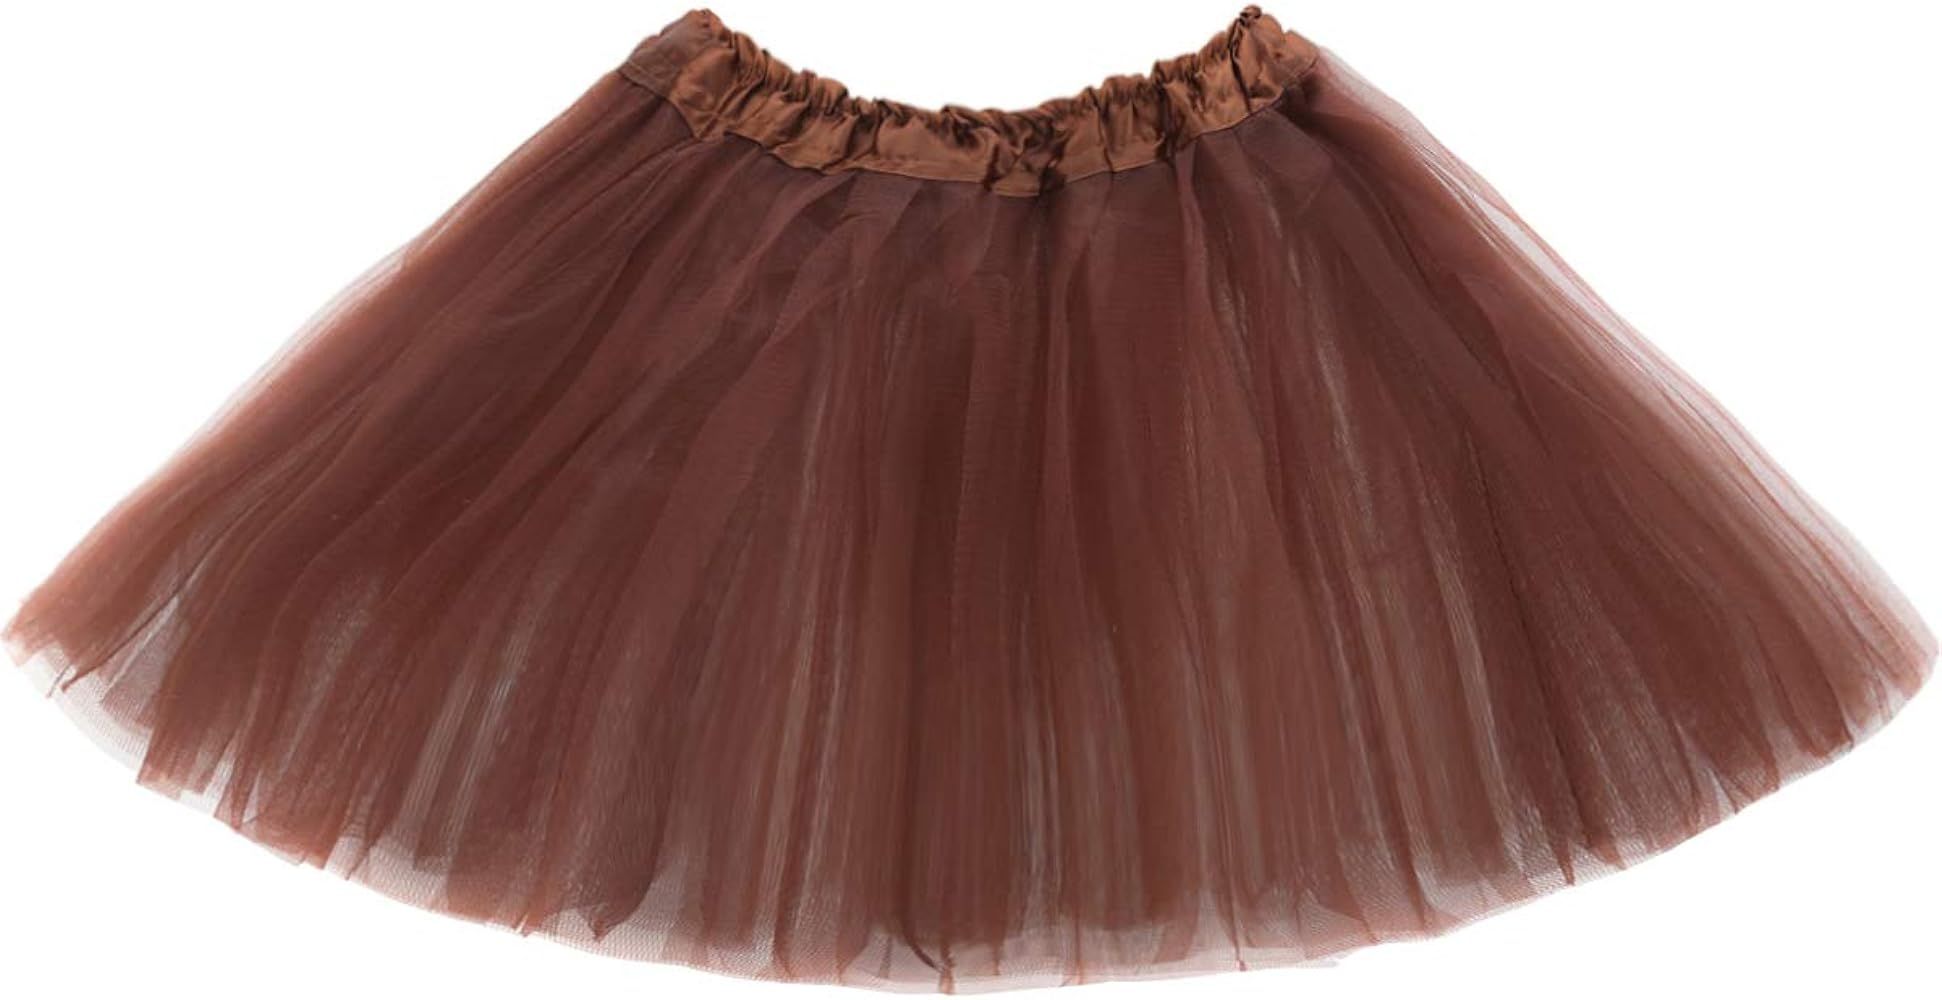 Girl Tutu Skirt, 3 Layers Tulle Tutus for Little Girls, Fluffy Ballet Dress Up for Toddler Kids Chil | Amazon (US)